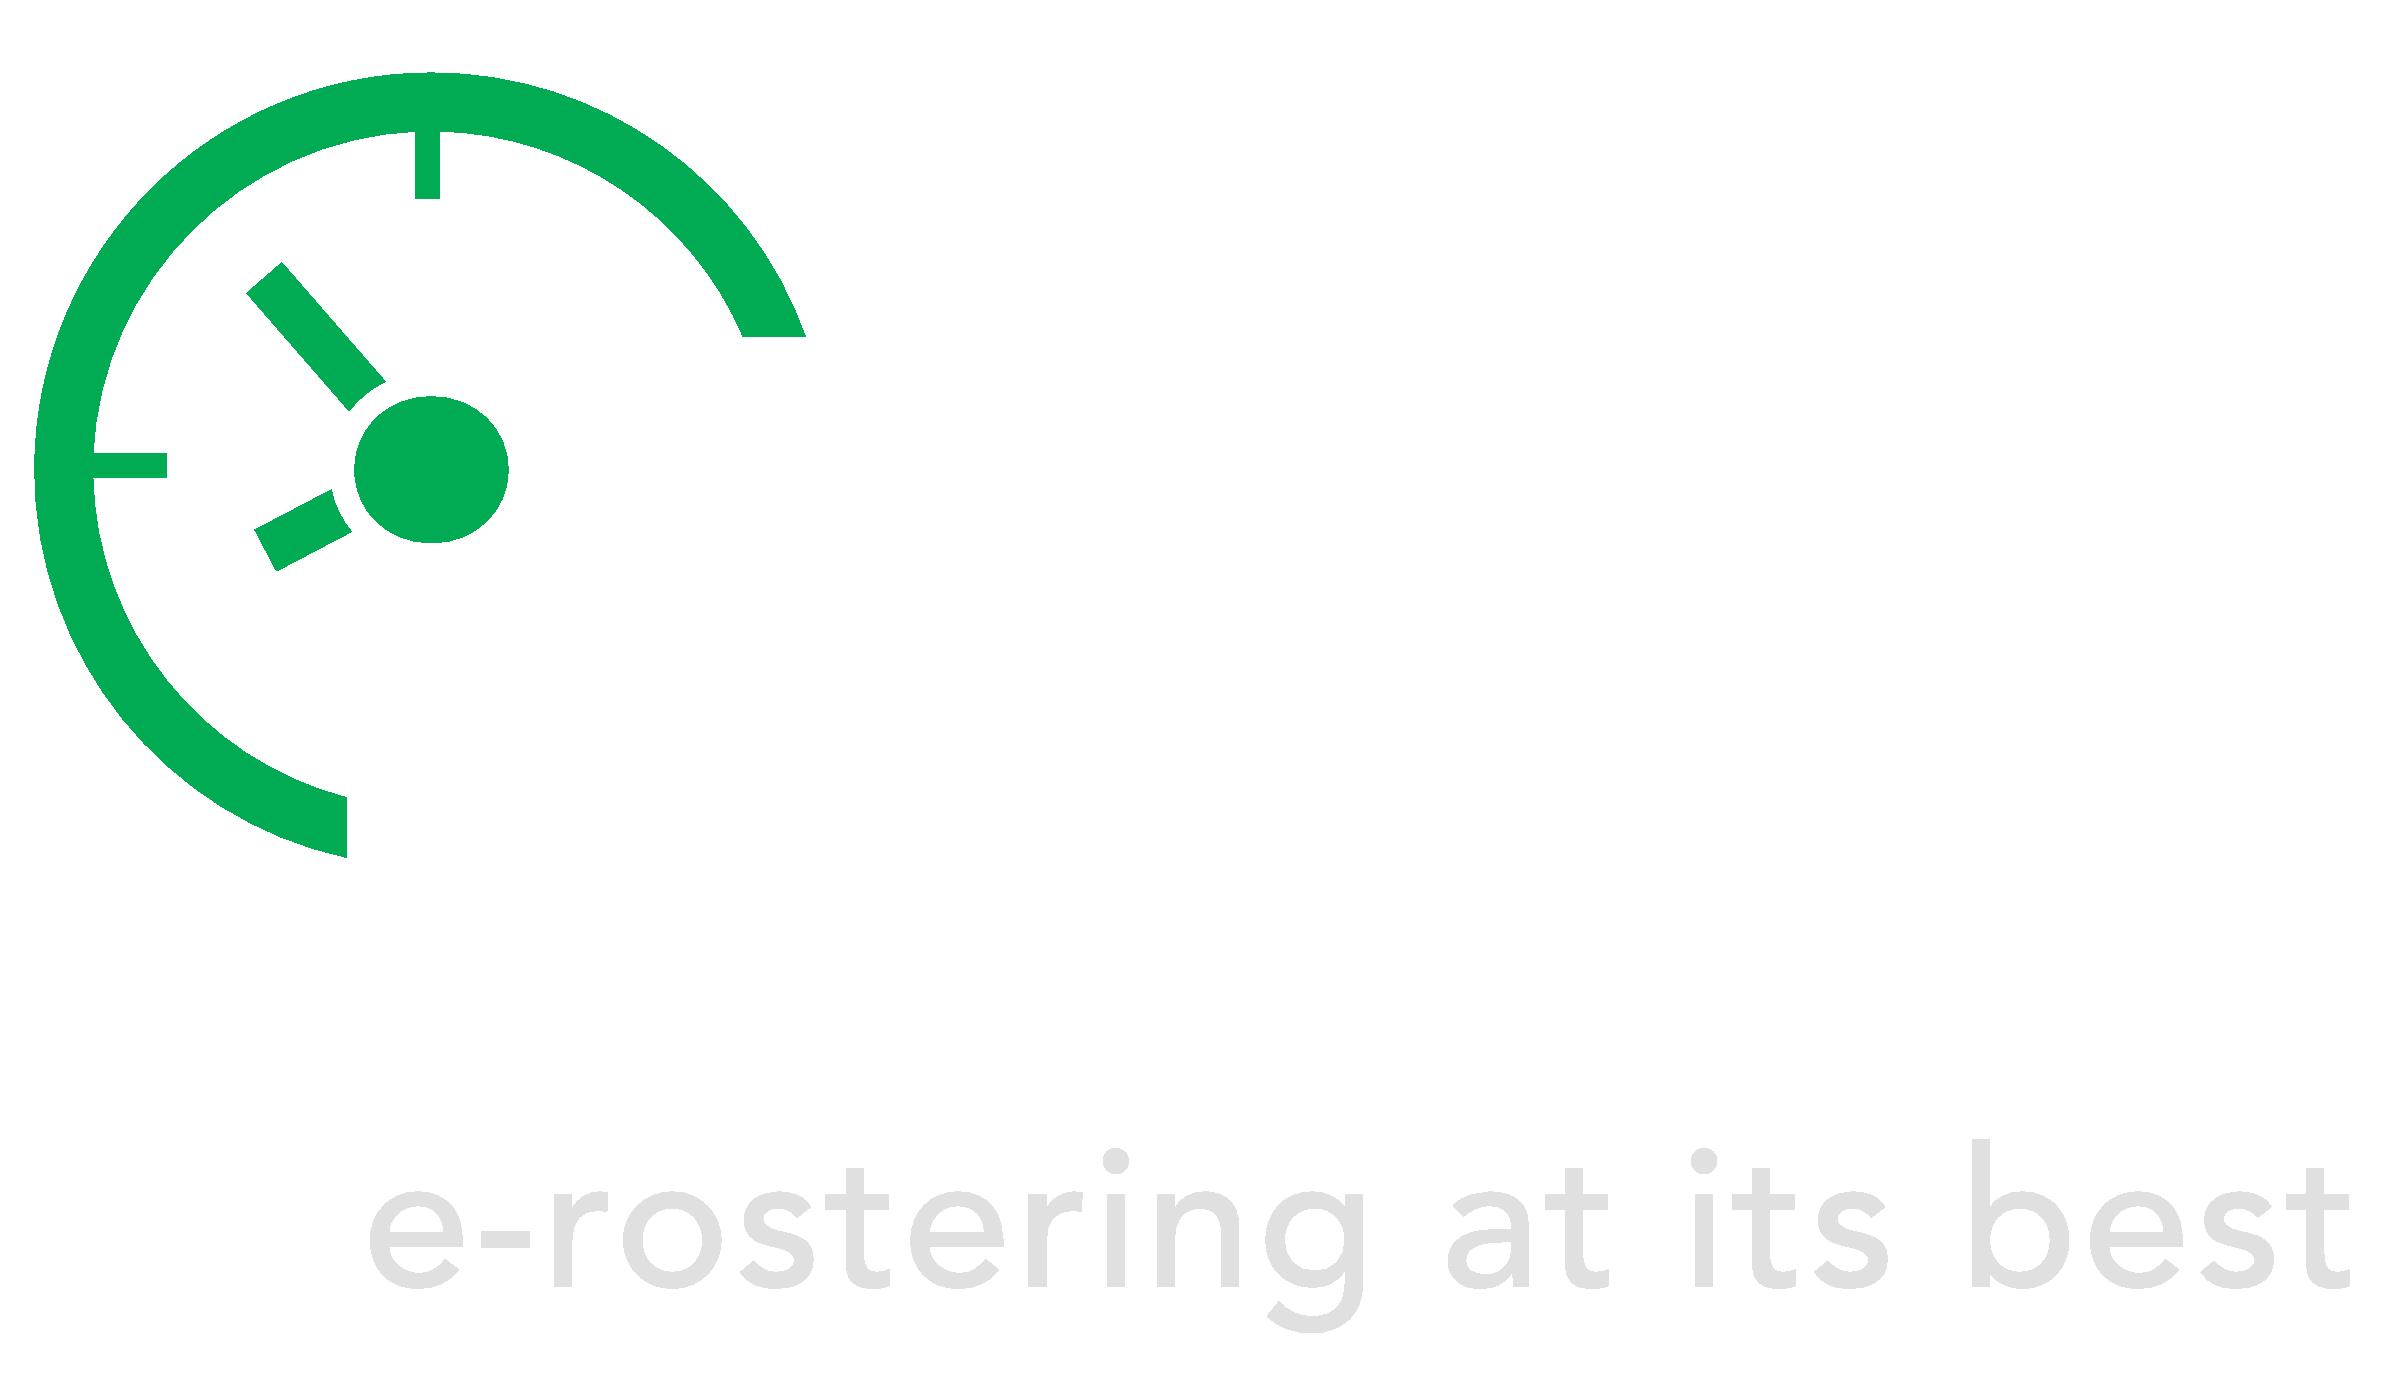 iRota Logo